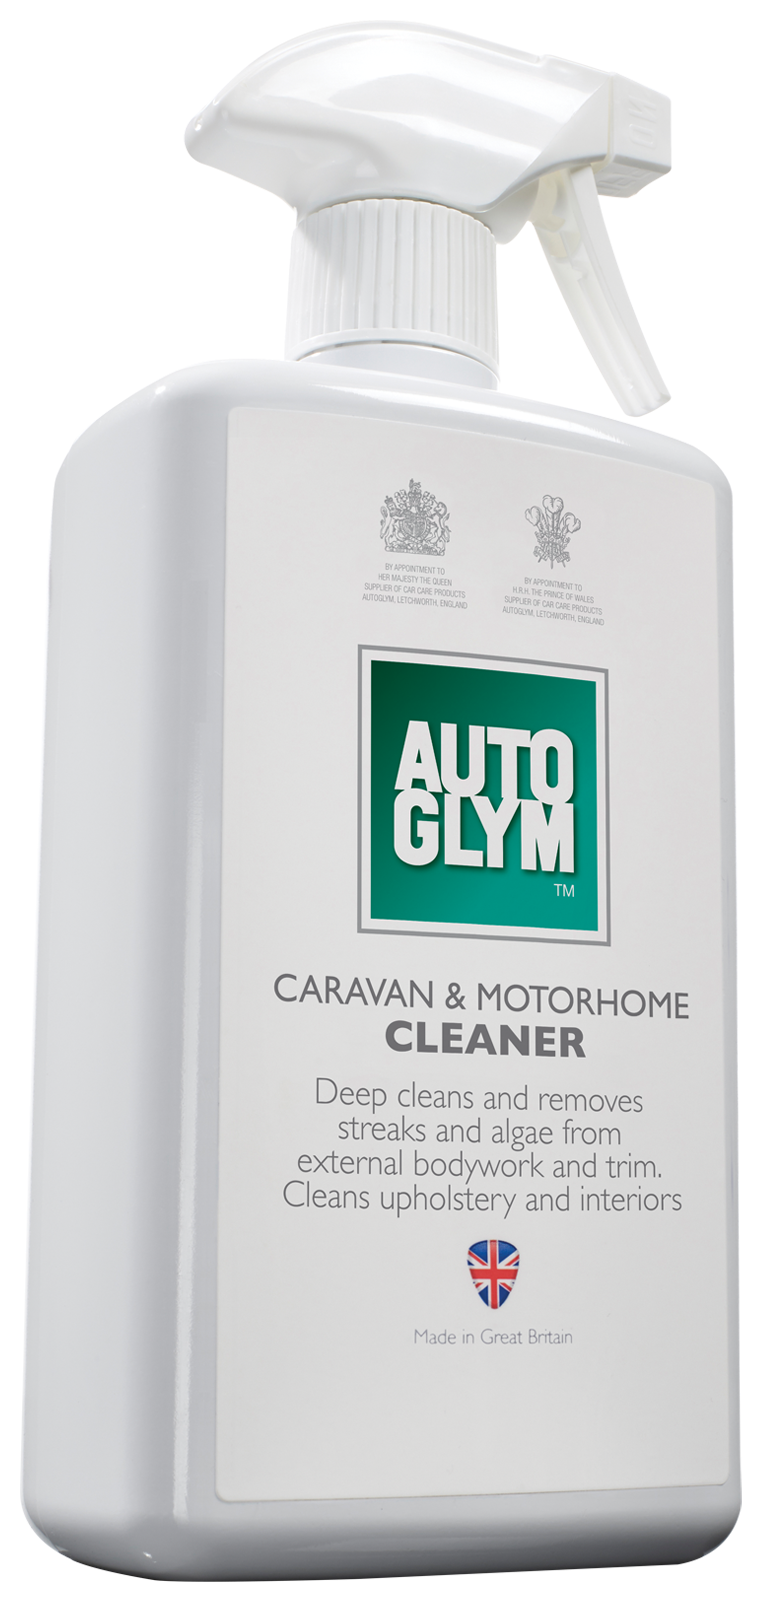 Auto Glym - Caravan & Motorhome Cleaner